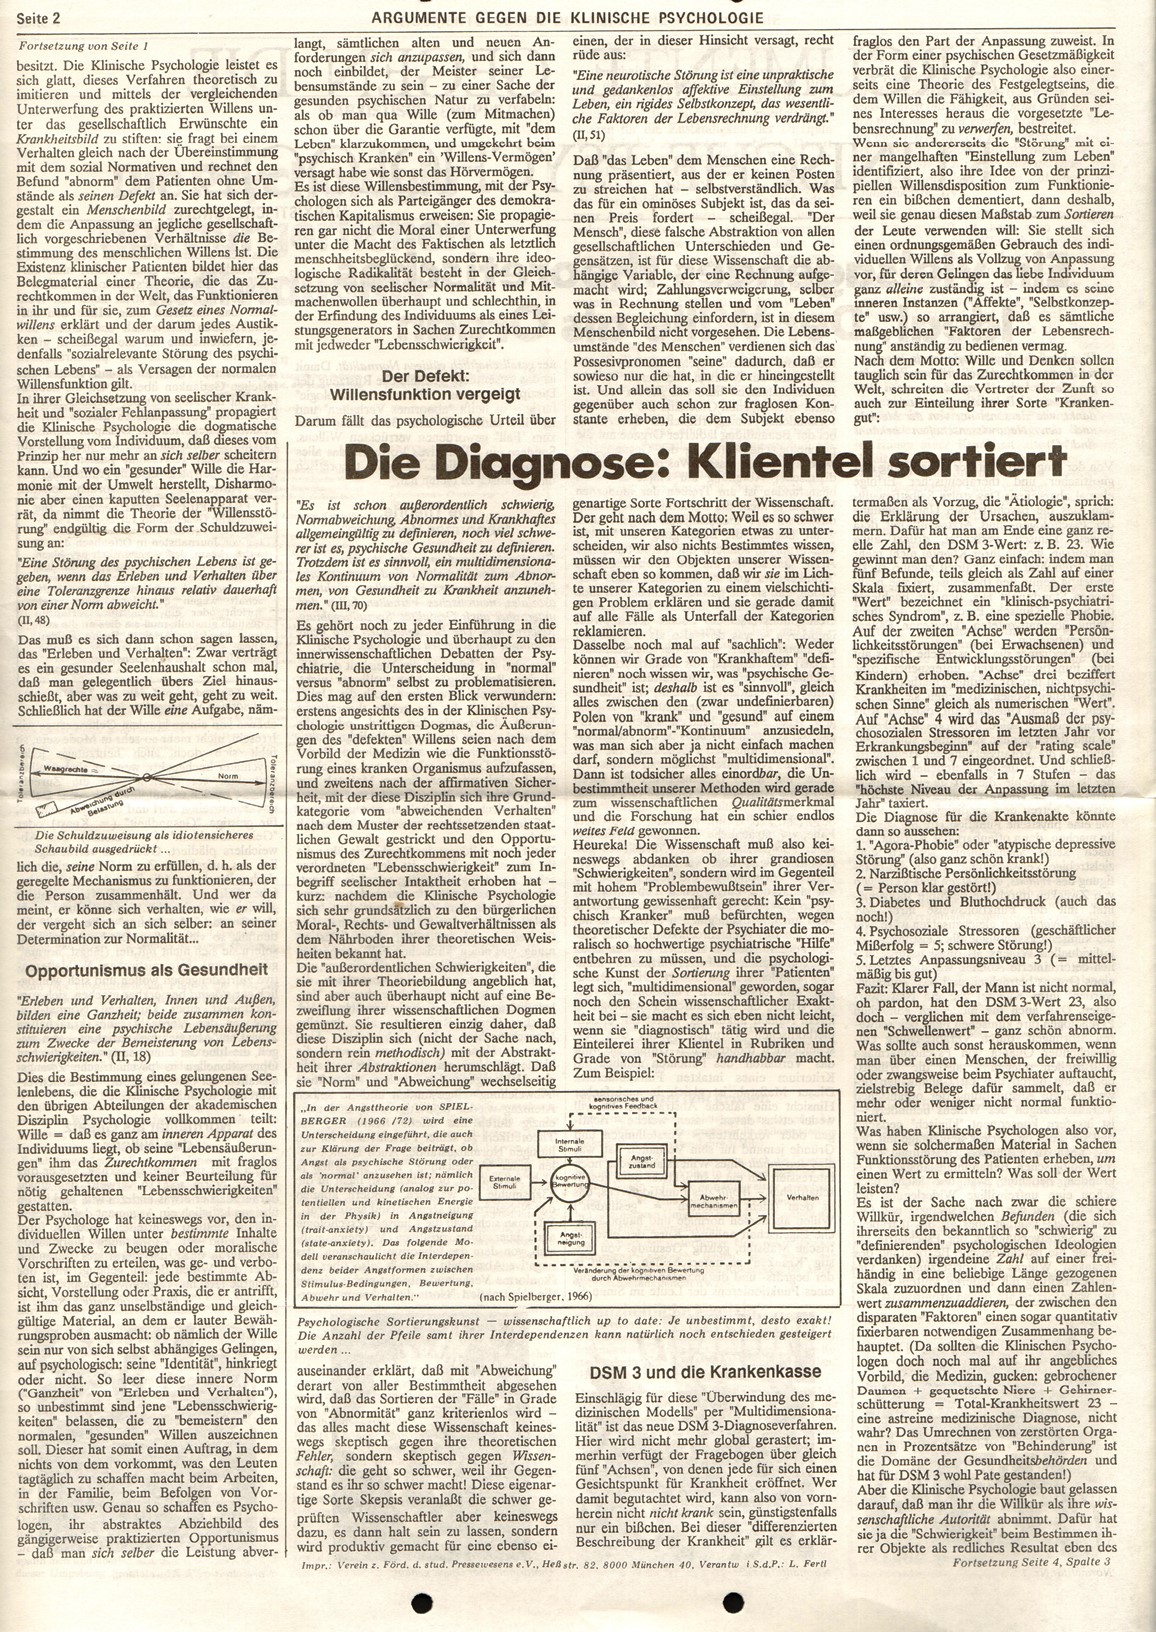 MG_Argumente_19871000_Klinische_Psychologie_02